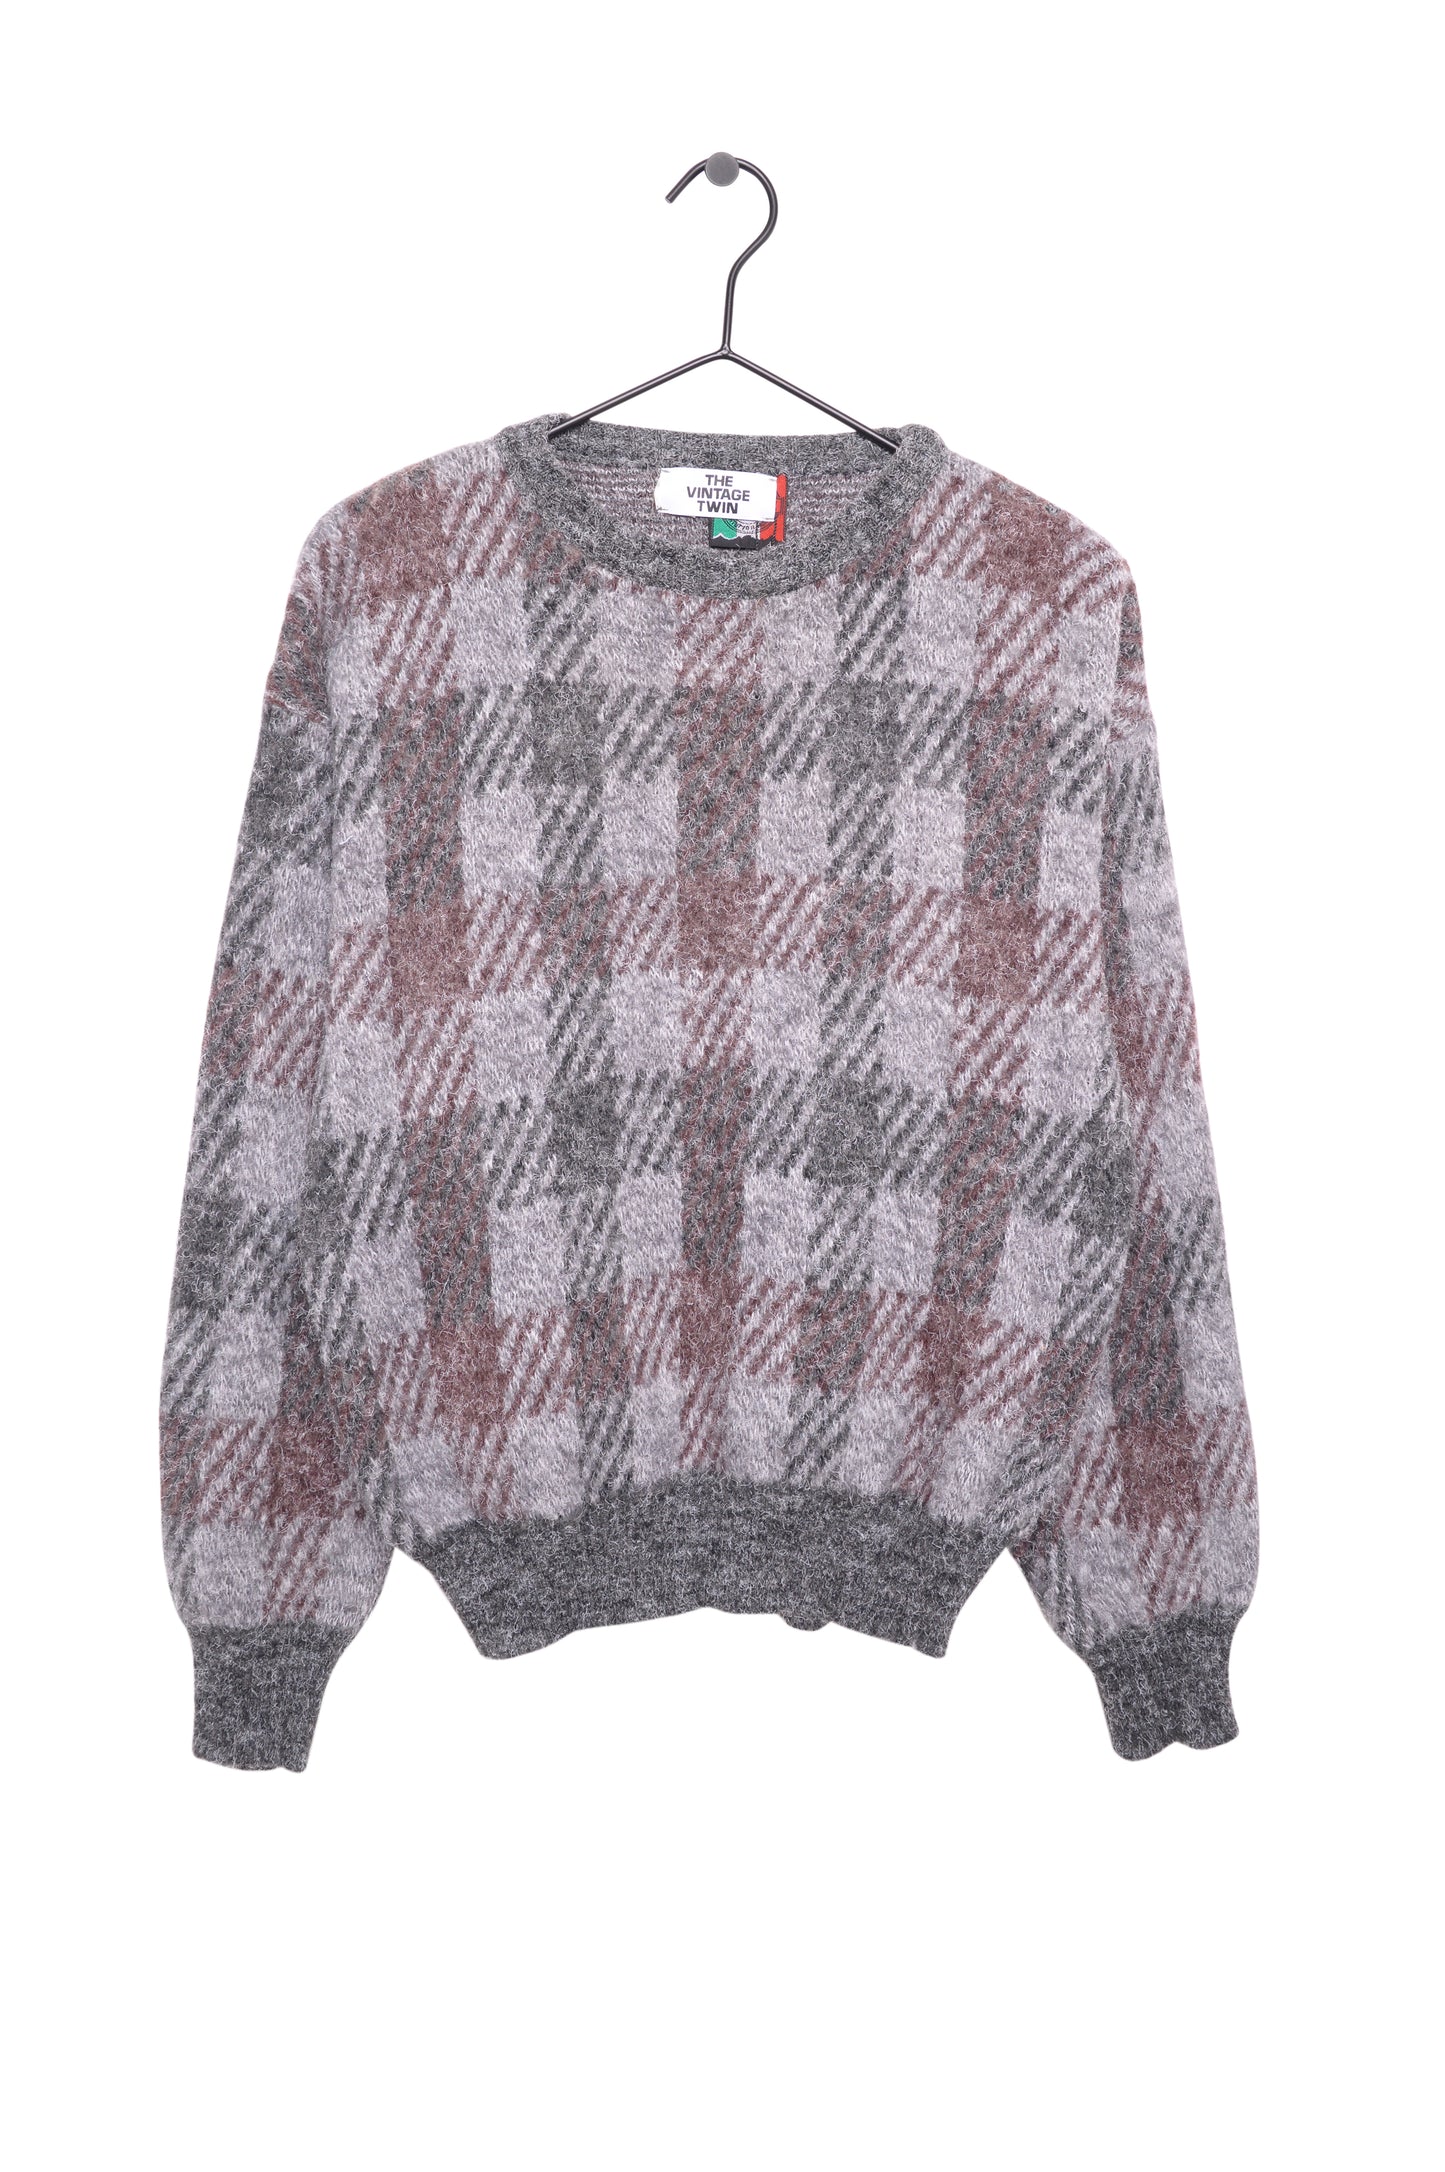 1980s Italian Wool Blend Sweater